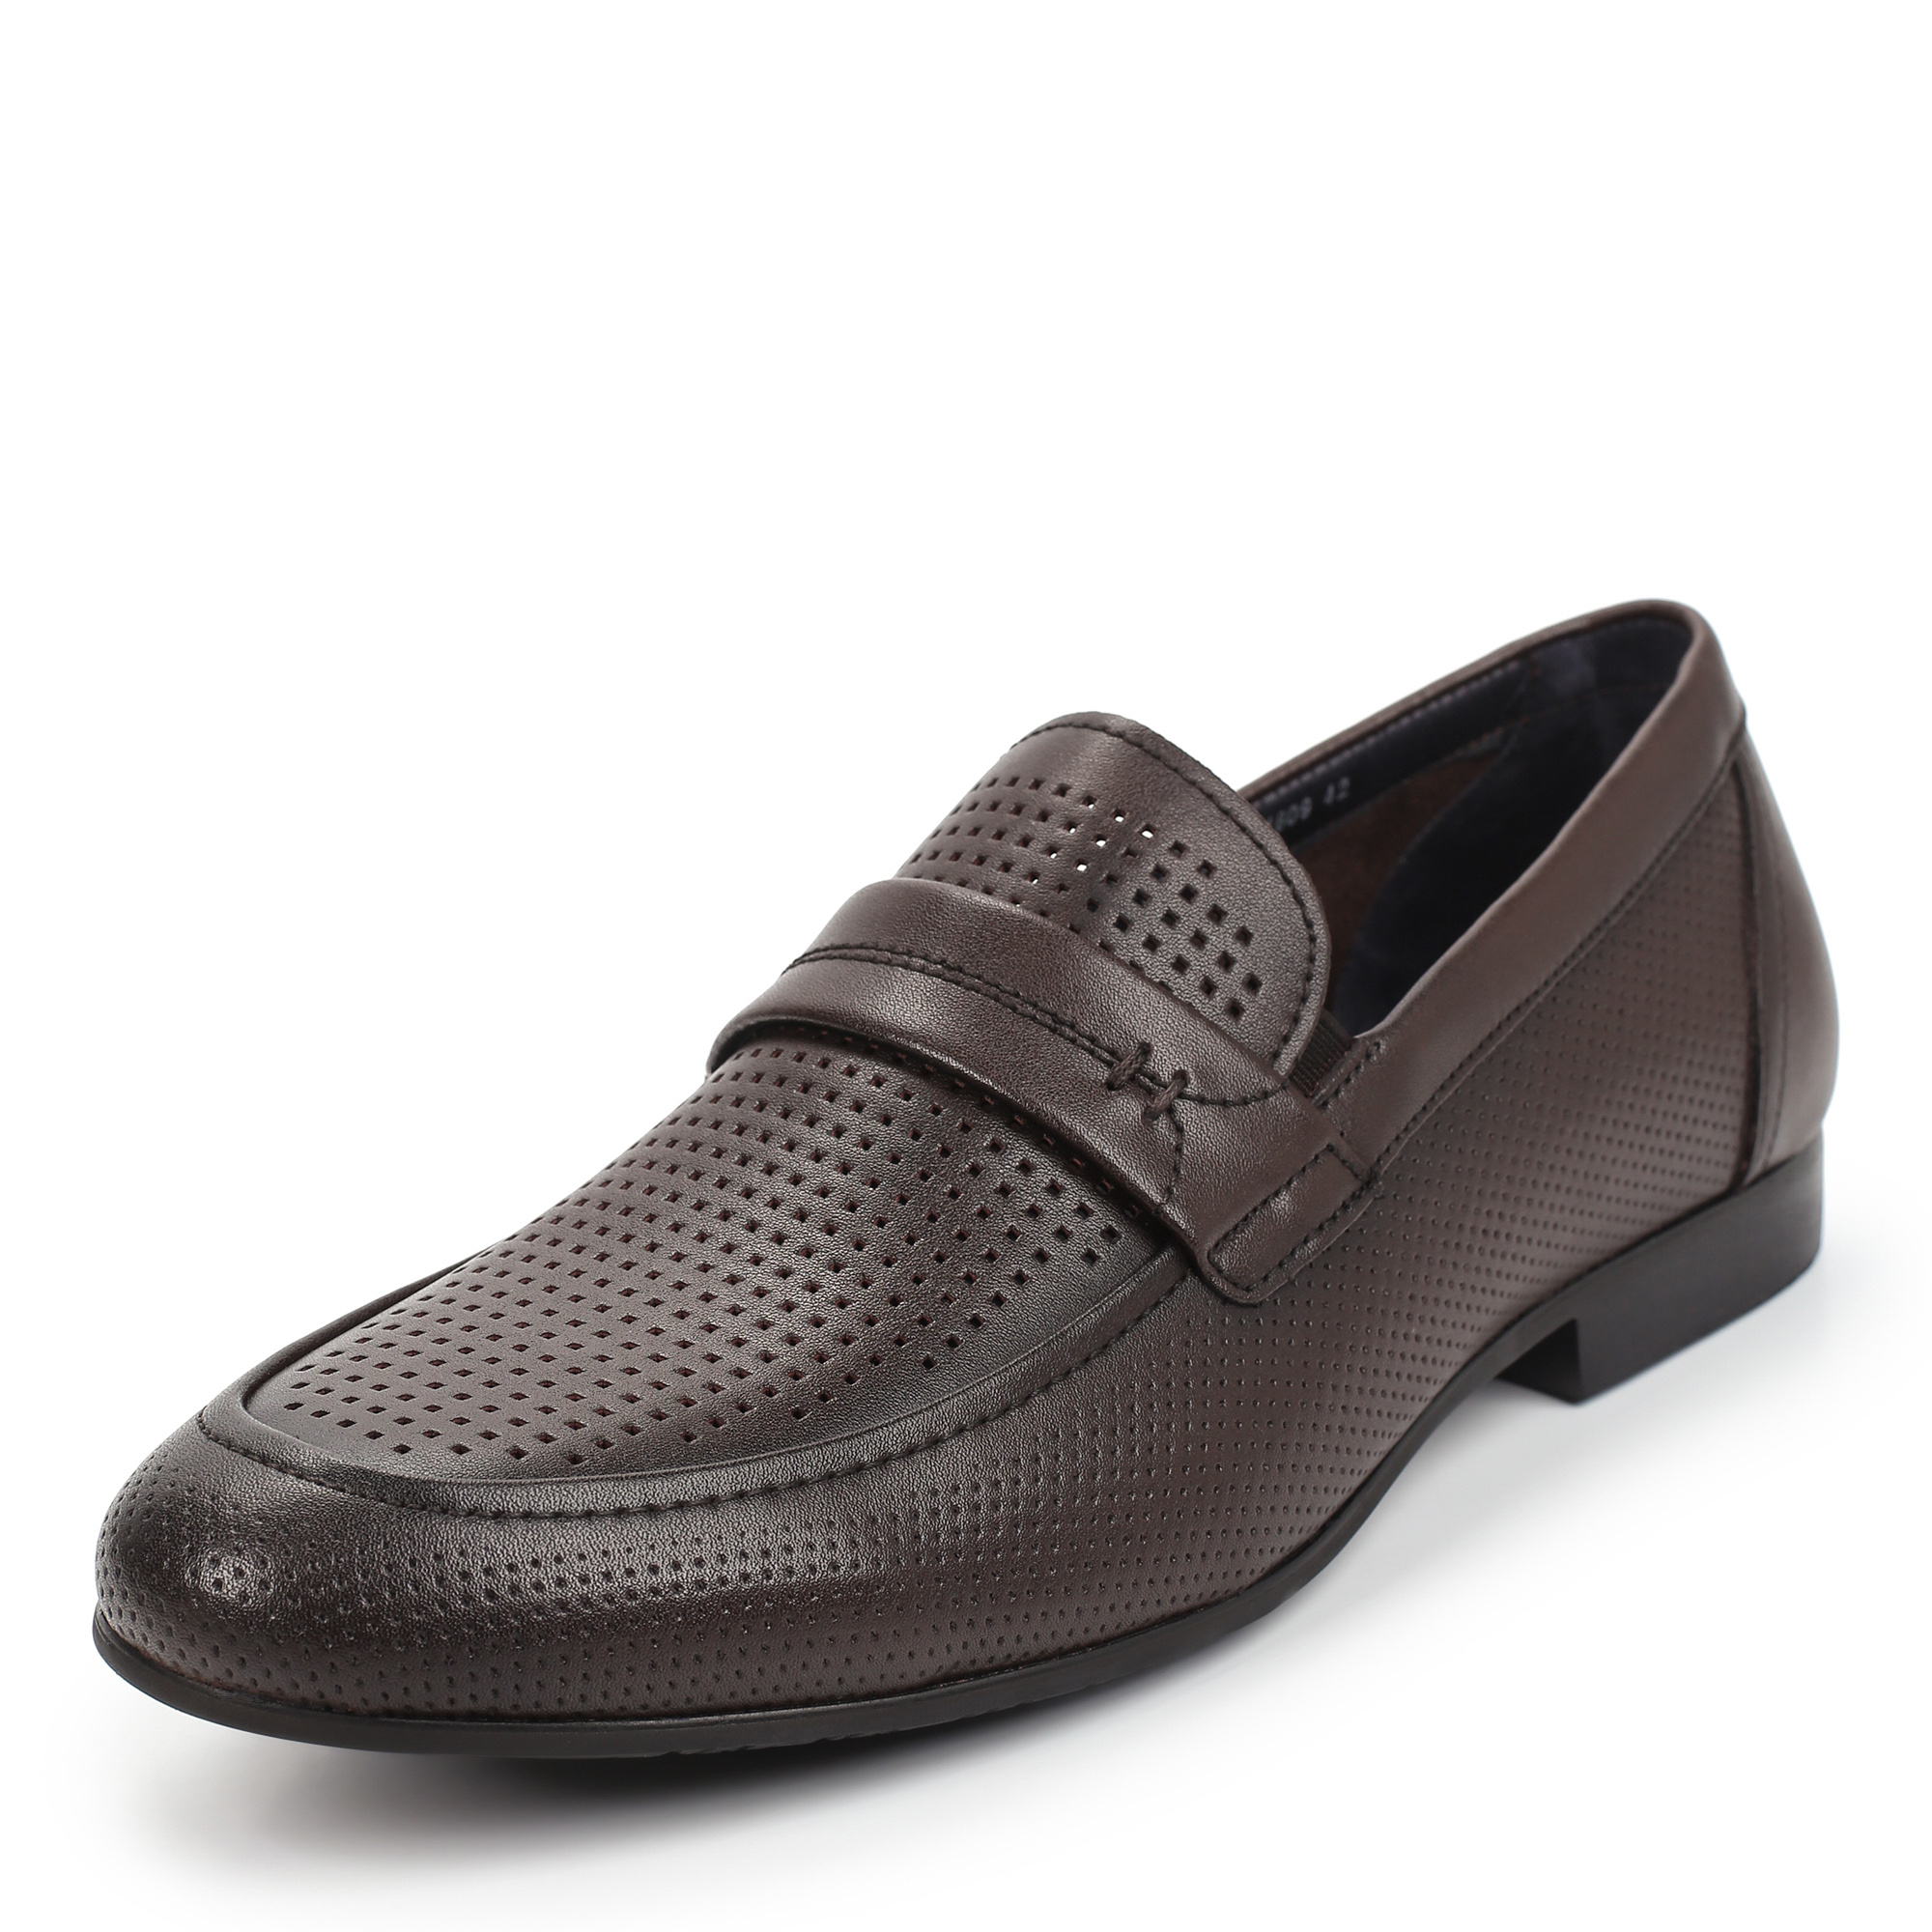 Туфли/полуботинки Thomas Munz 058-115A-1609, цвет темно-коричневый, размер 41 - фото 2